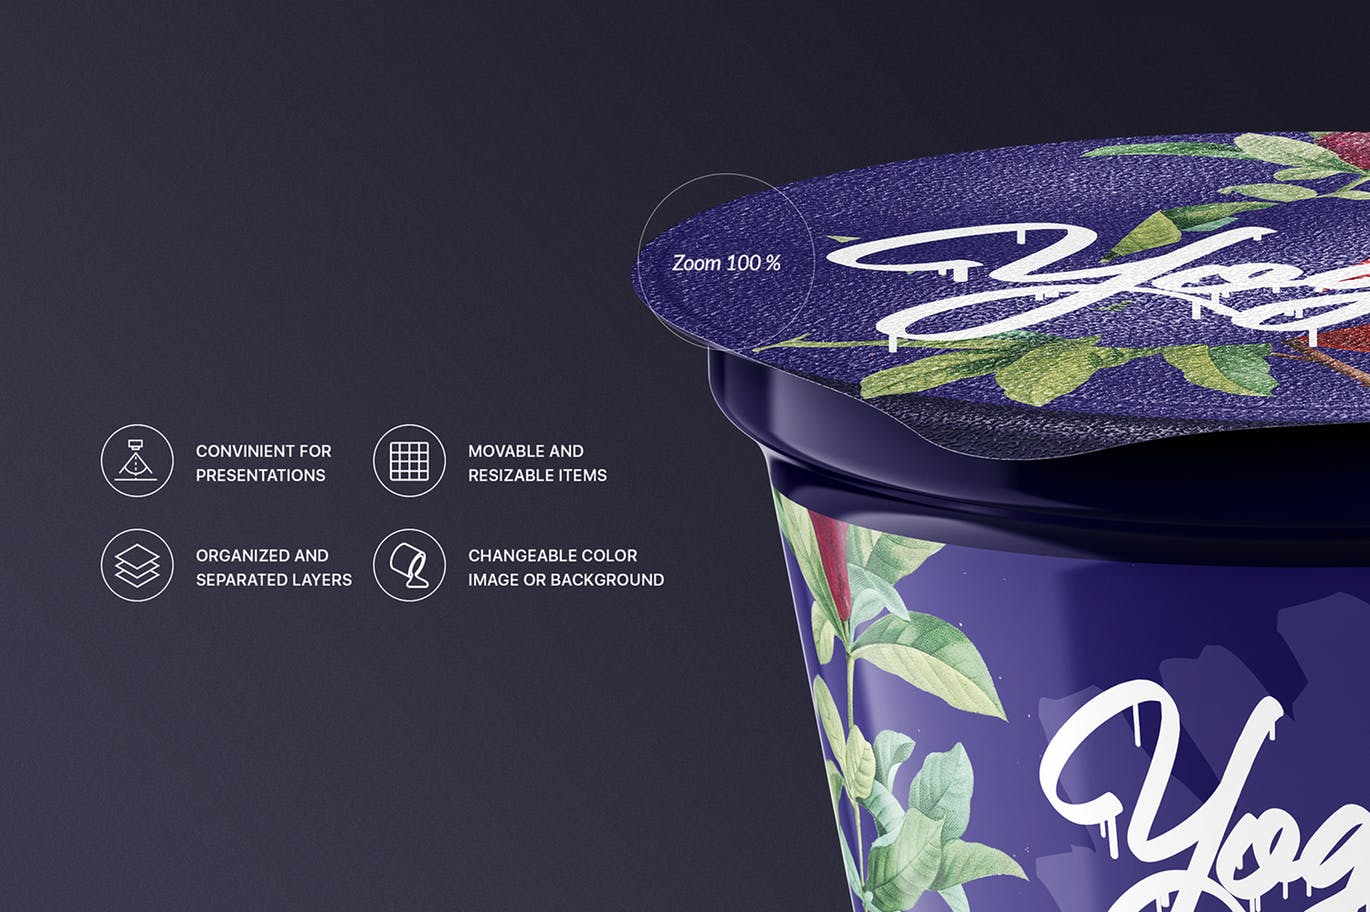 逼真质感的高品质时尚高端酸奶包装设计VI样机展示模型